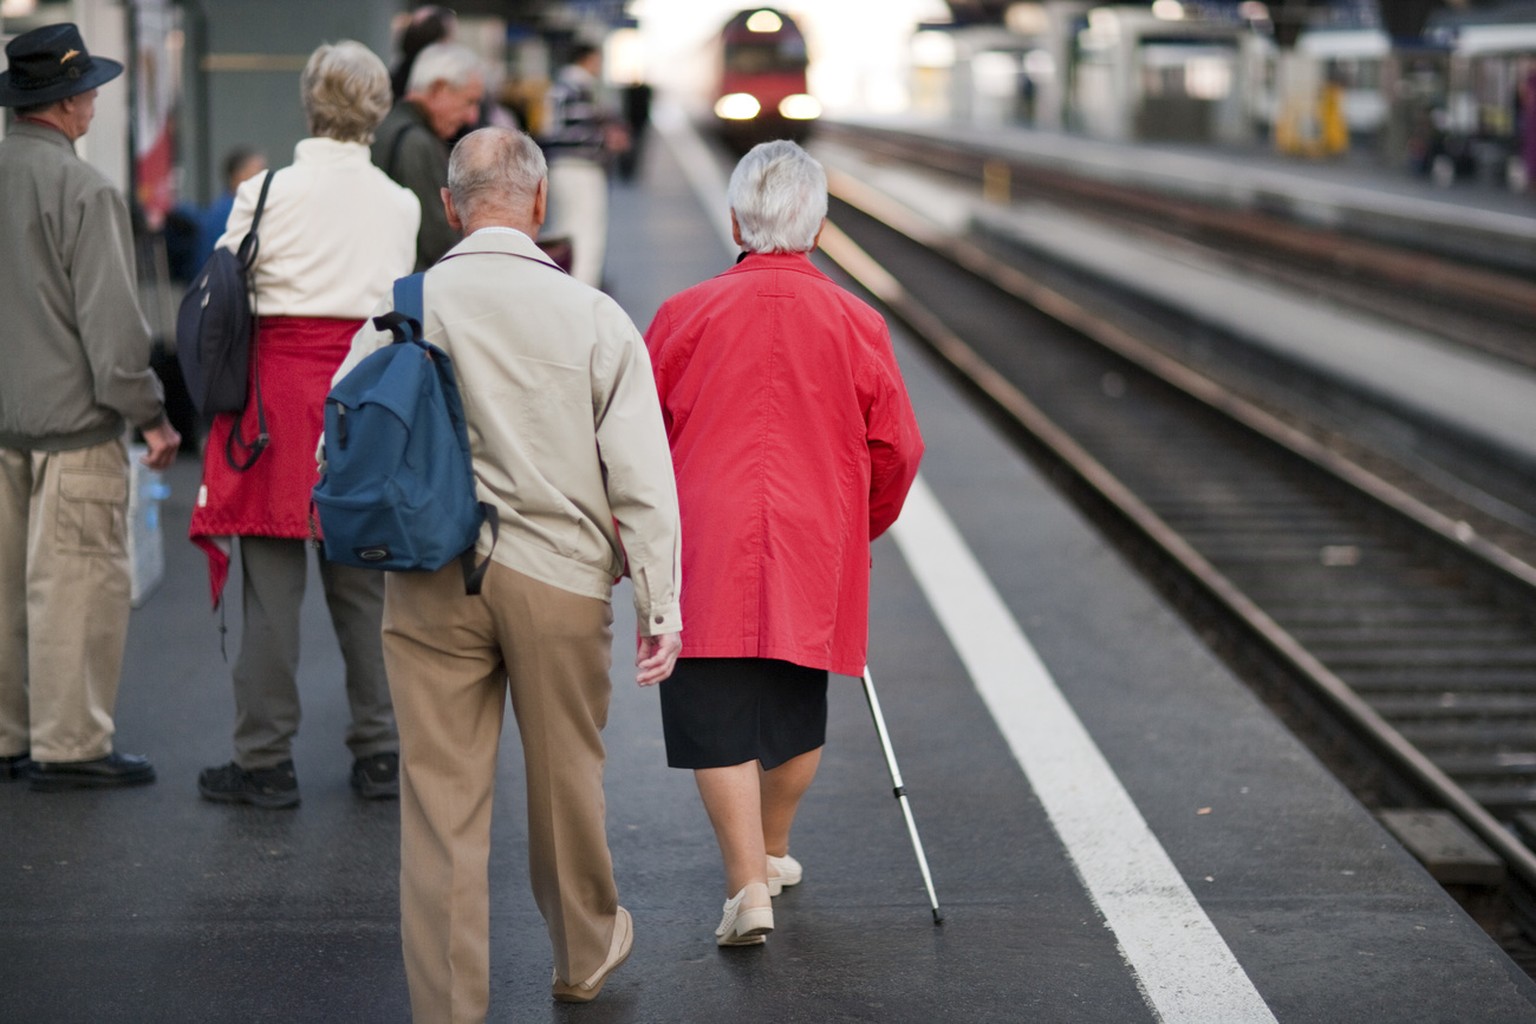 Travelling pensioners walk down a platform in the main train station in Zurich, Switzerland, pictured on September 29, 2009. (KEYSTONE/Gaetan Bally)

Reisende Senioren gehen am 29. September 2009 ein  ...